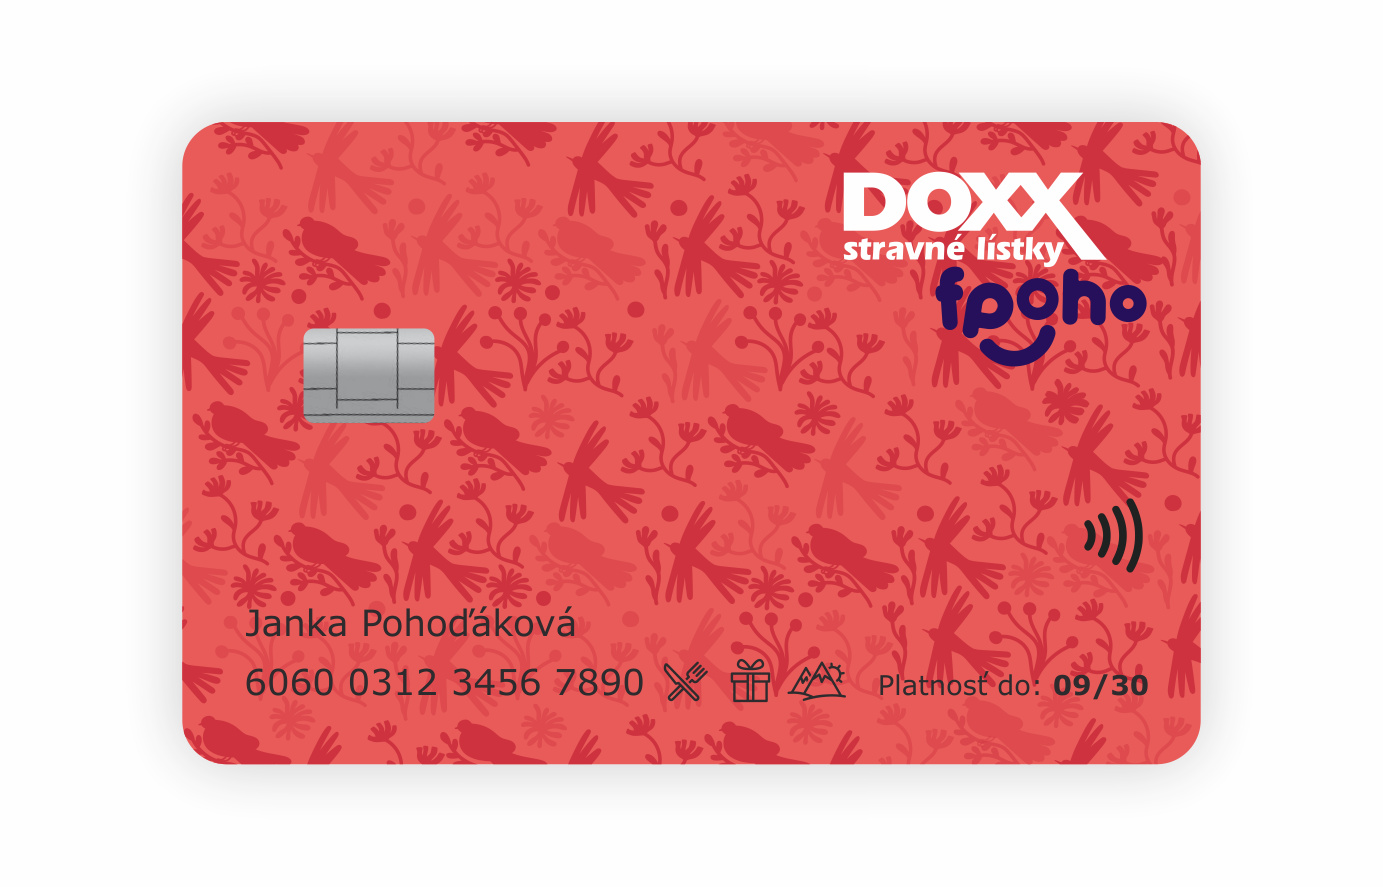 Karta DOXX fpoho 2022 - Prevádzky